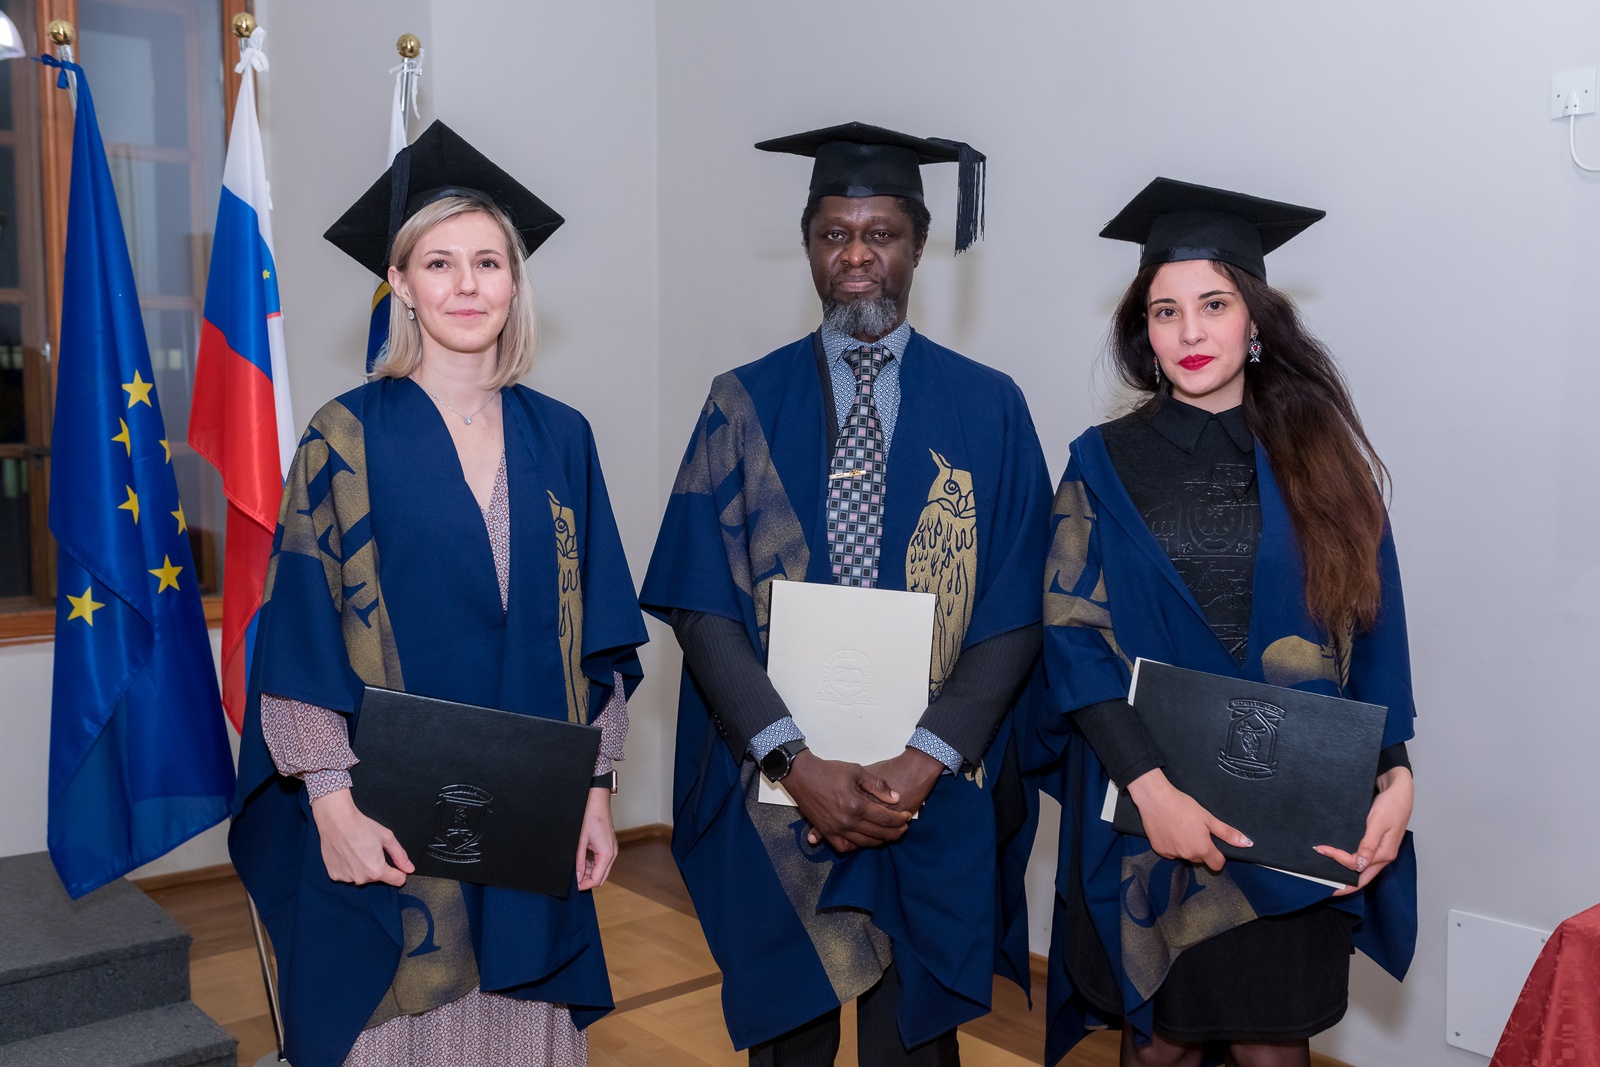 From left to right: Dr. Hanna Budasheva, Dr. Rowland Adetayo Adesida and Dr. Takwa  Chouki. Photo: Miha Godec